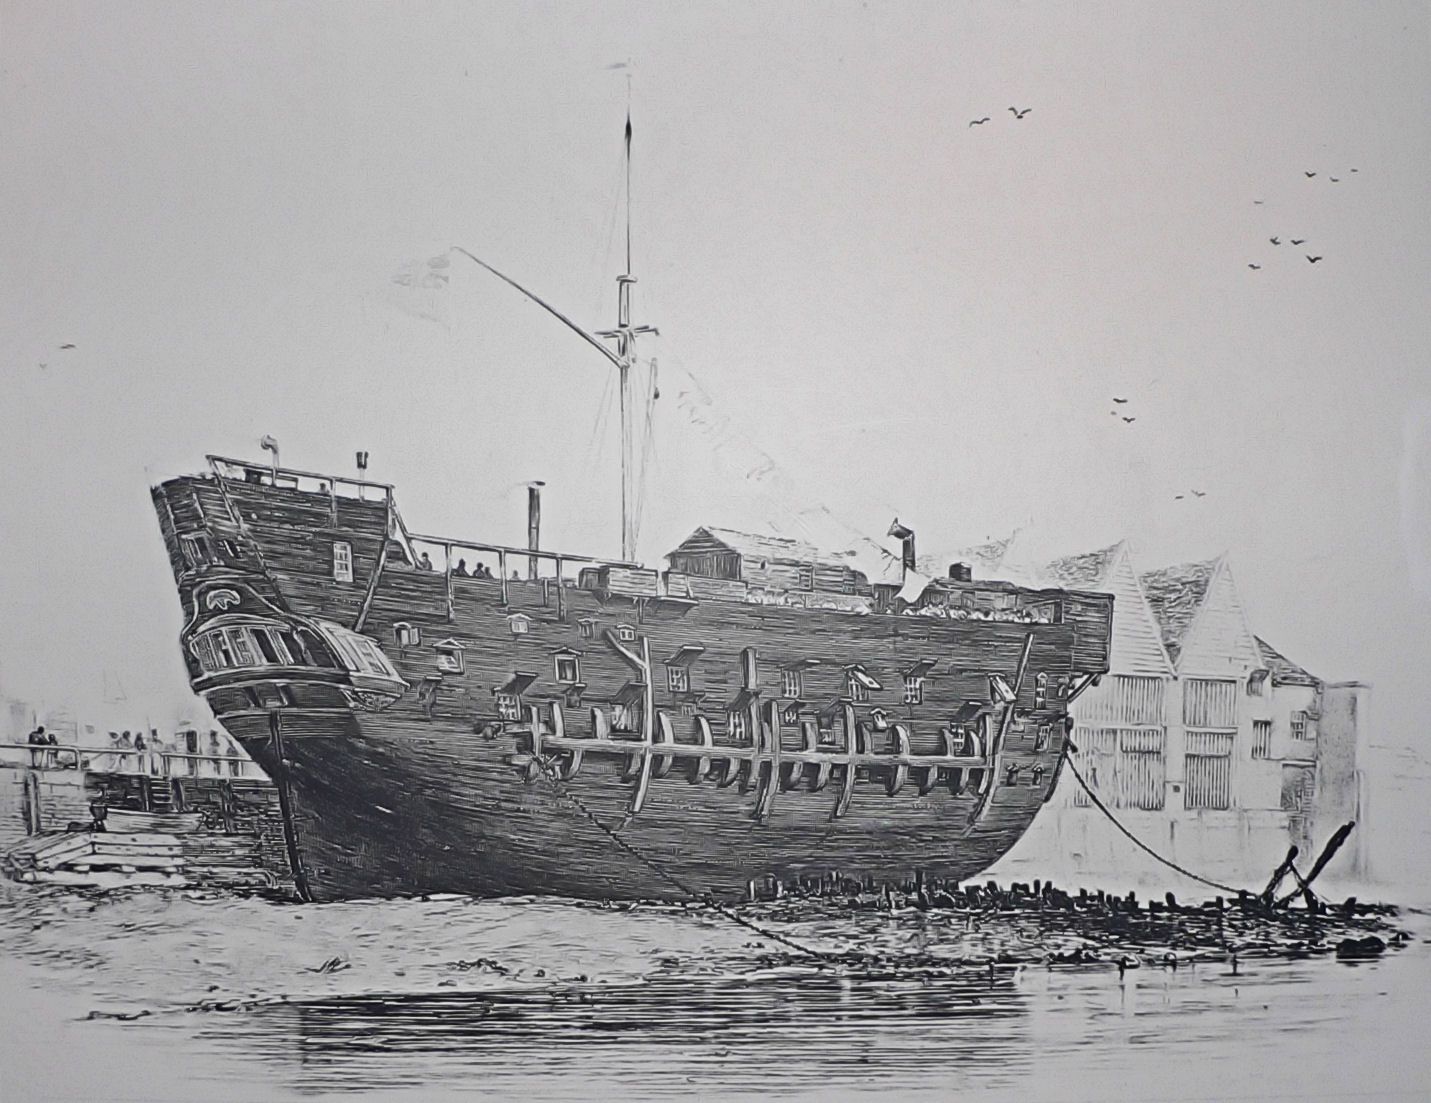 The Dark History of 19th Century Prison Ships: A Glimpse into the Cruel Punishment at Sea